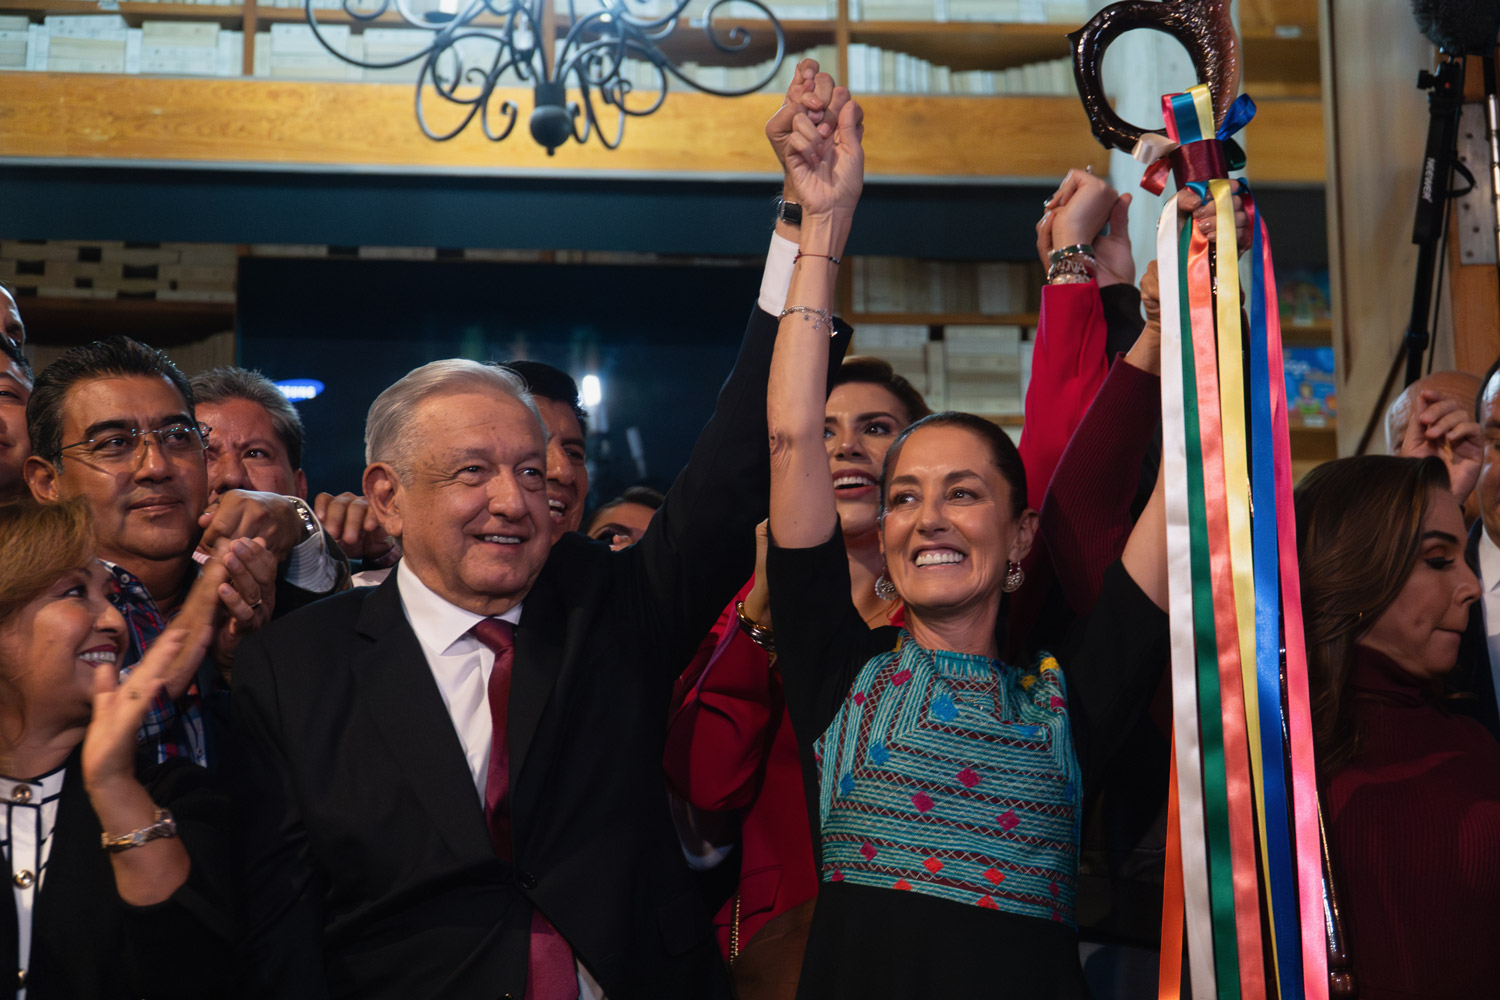 El Presidente Andrés Manuel López Obrador entrega bastón de mando a Claudia Sheinbaum para continuar movimiento de transformación